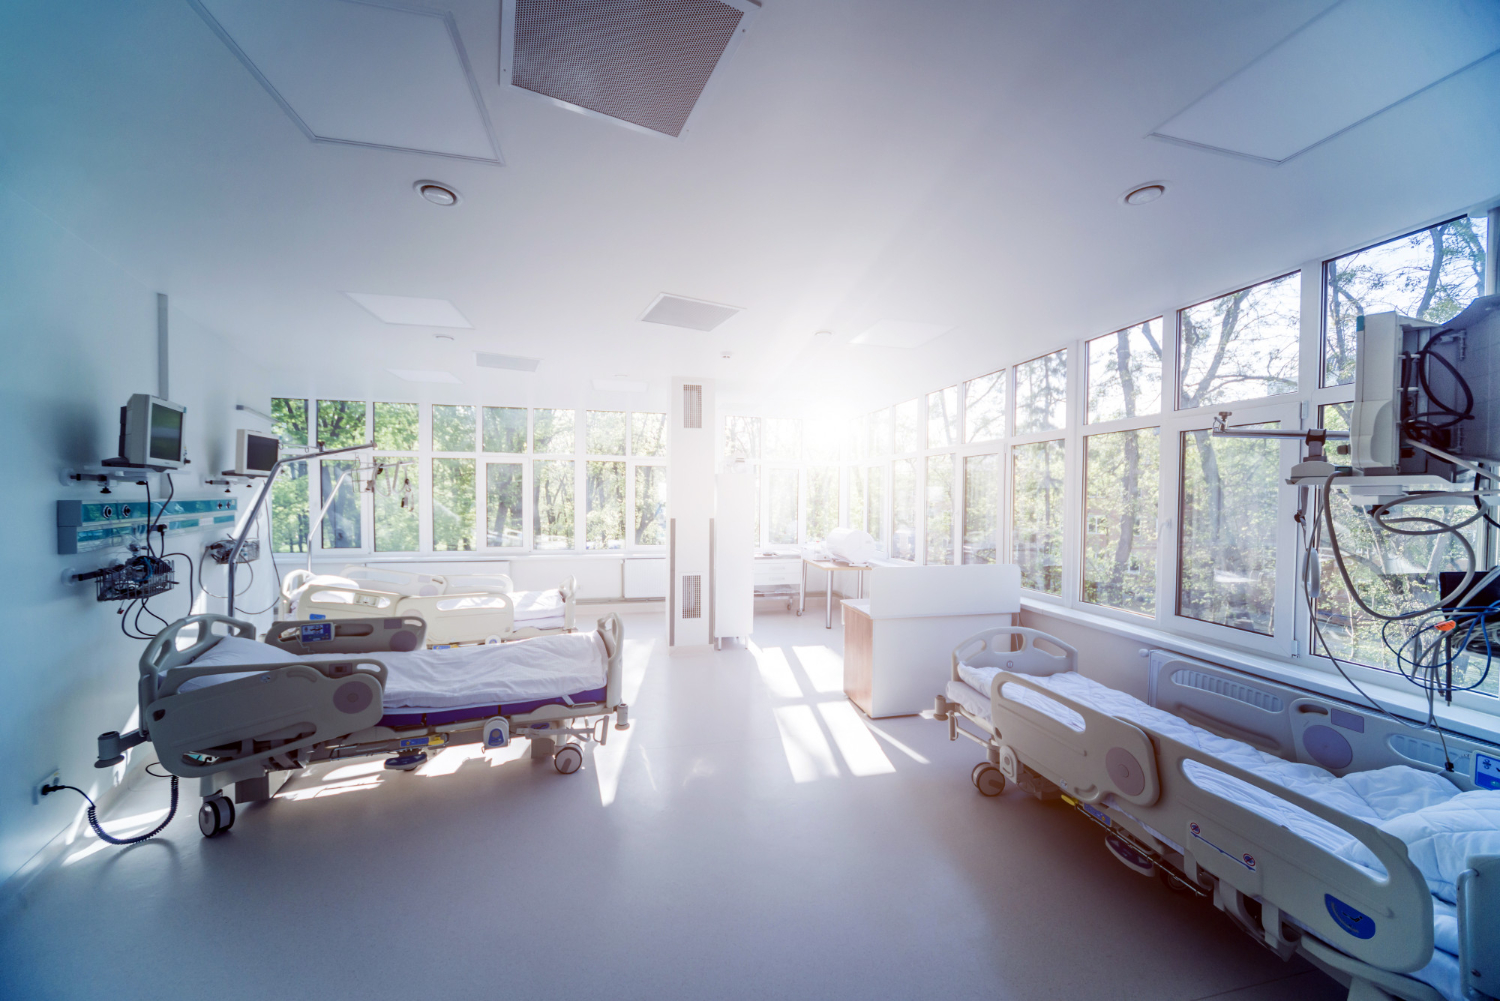 Jakie przetargi najczęściej ogłaszają szpitale?